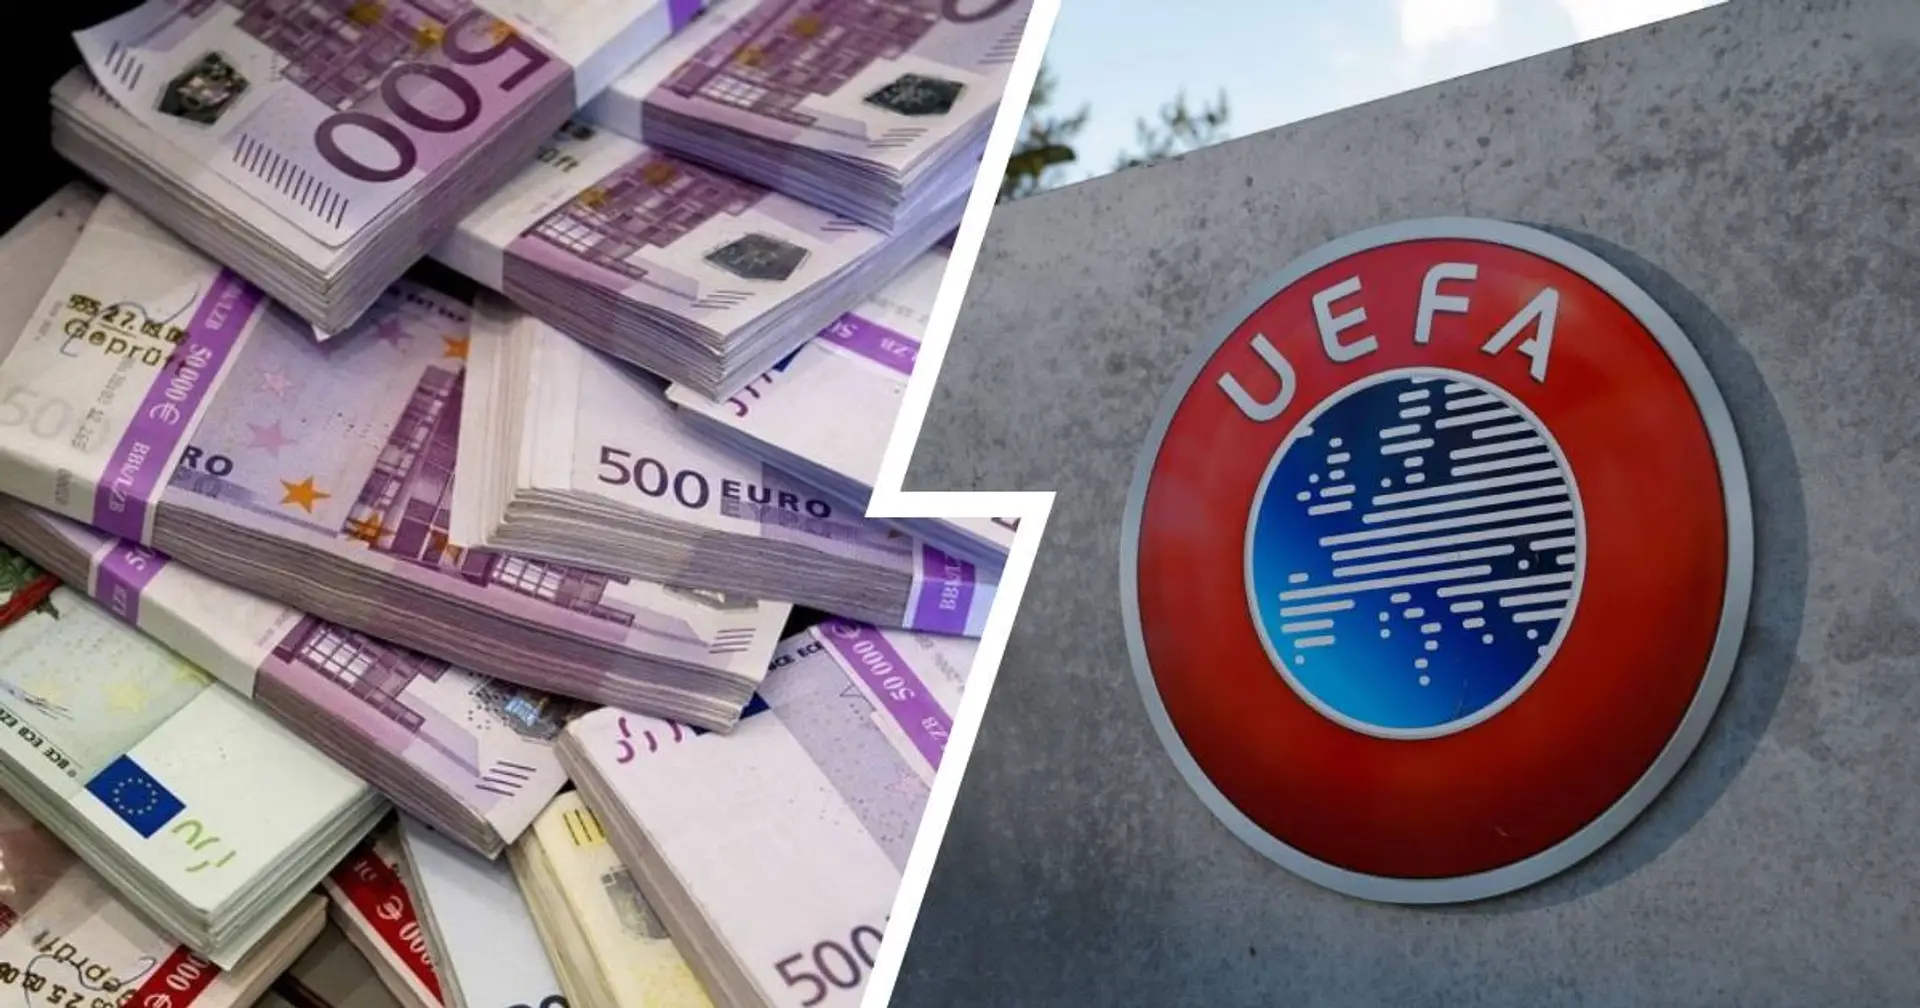 UEFA sanktioniert 9 Klubs wegen Verstößen gegen Finanzregeln - welche Vereine sind betroffen?